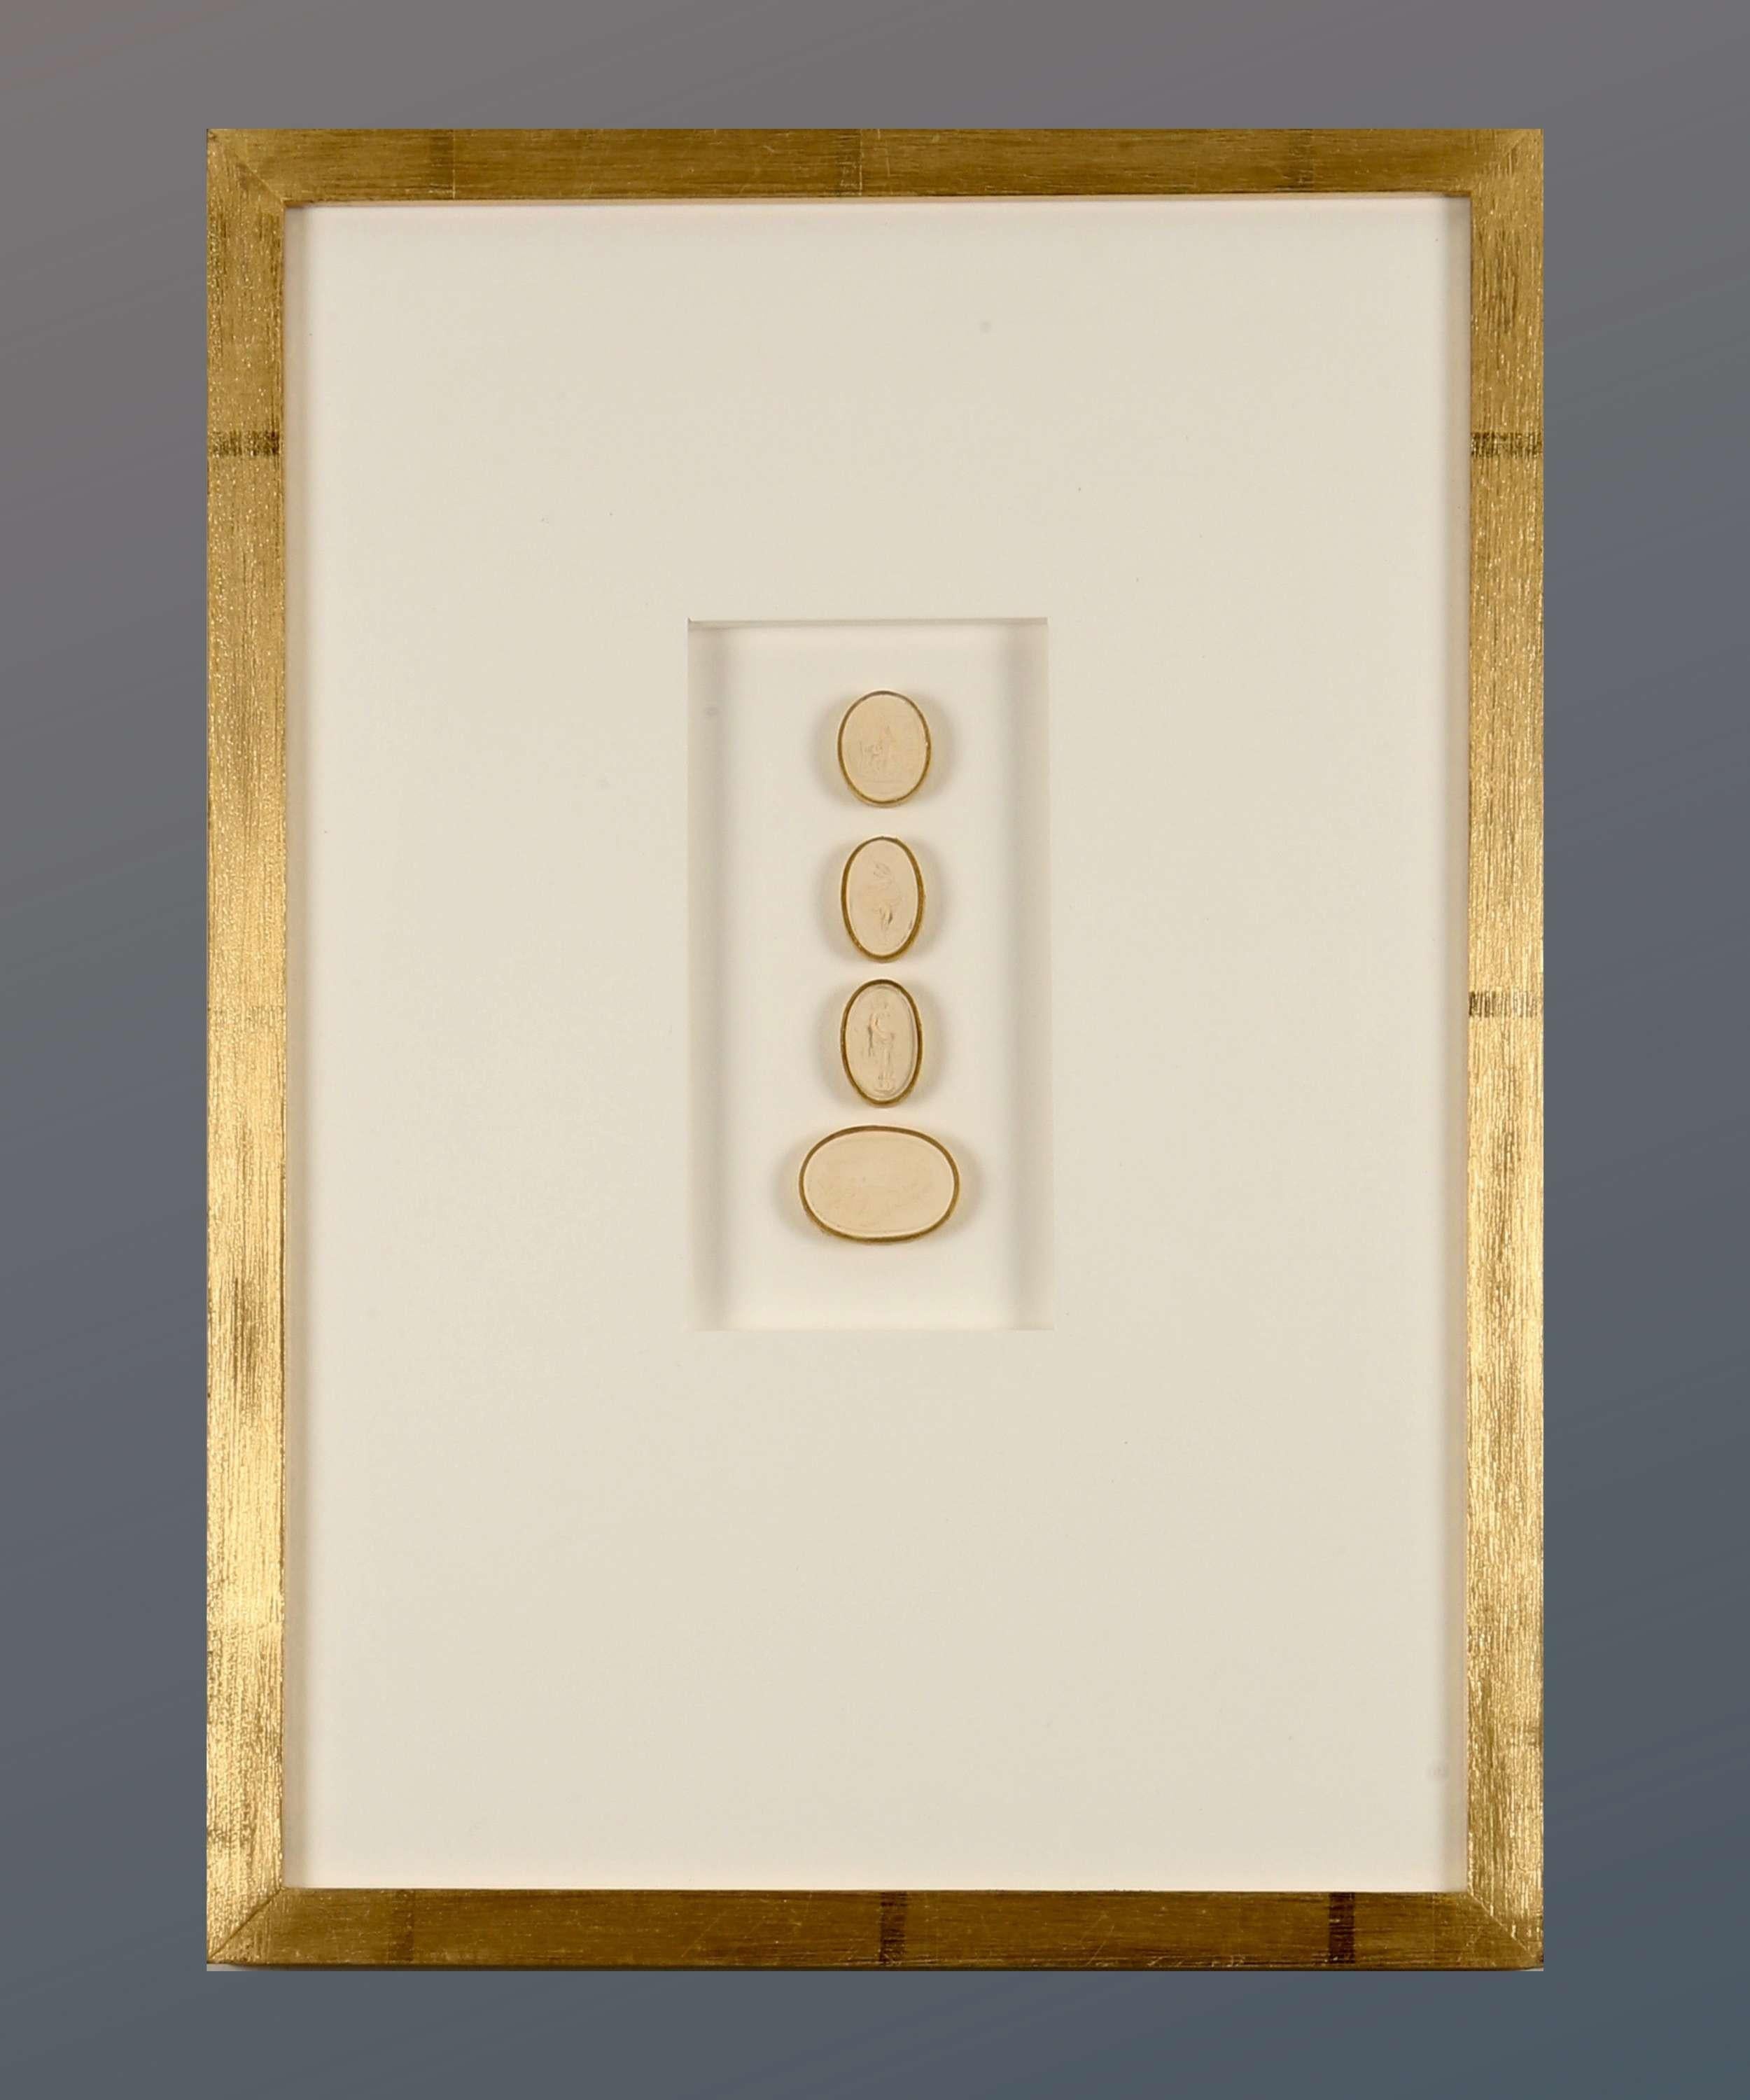 Paoletti Impronte, ‘Mussei Diversi’ Framed Plaster Cameo Seals, Rome c1800